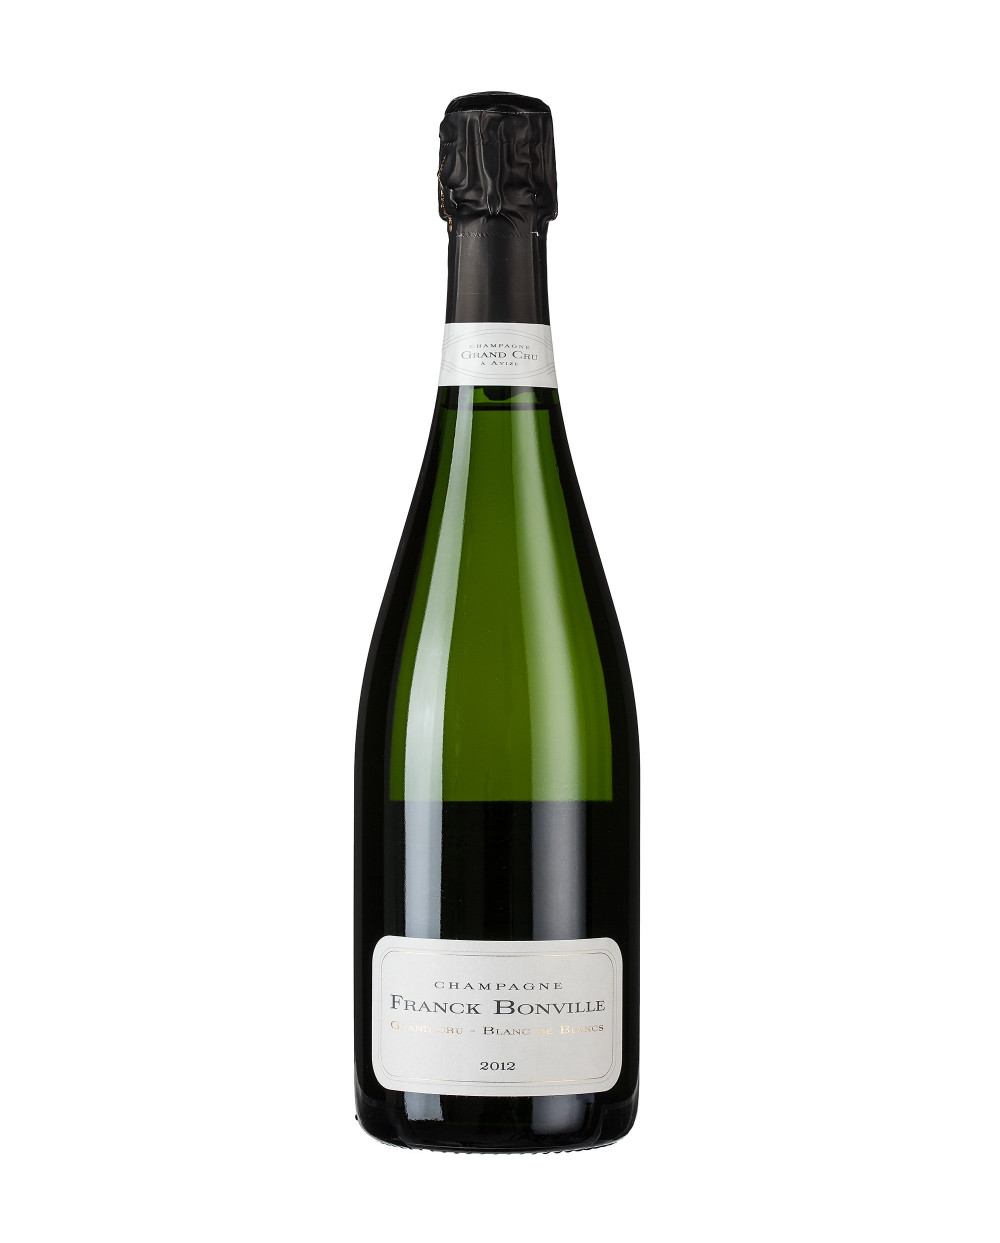 2014 Blanc de Blancs Champagner Grand Cru Franck Bonville